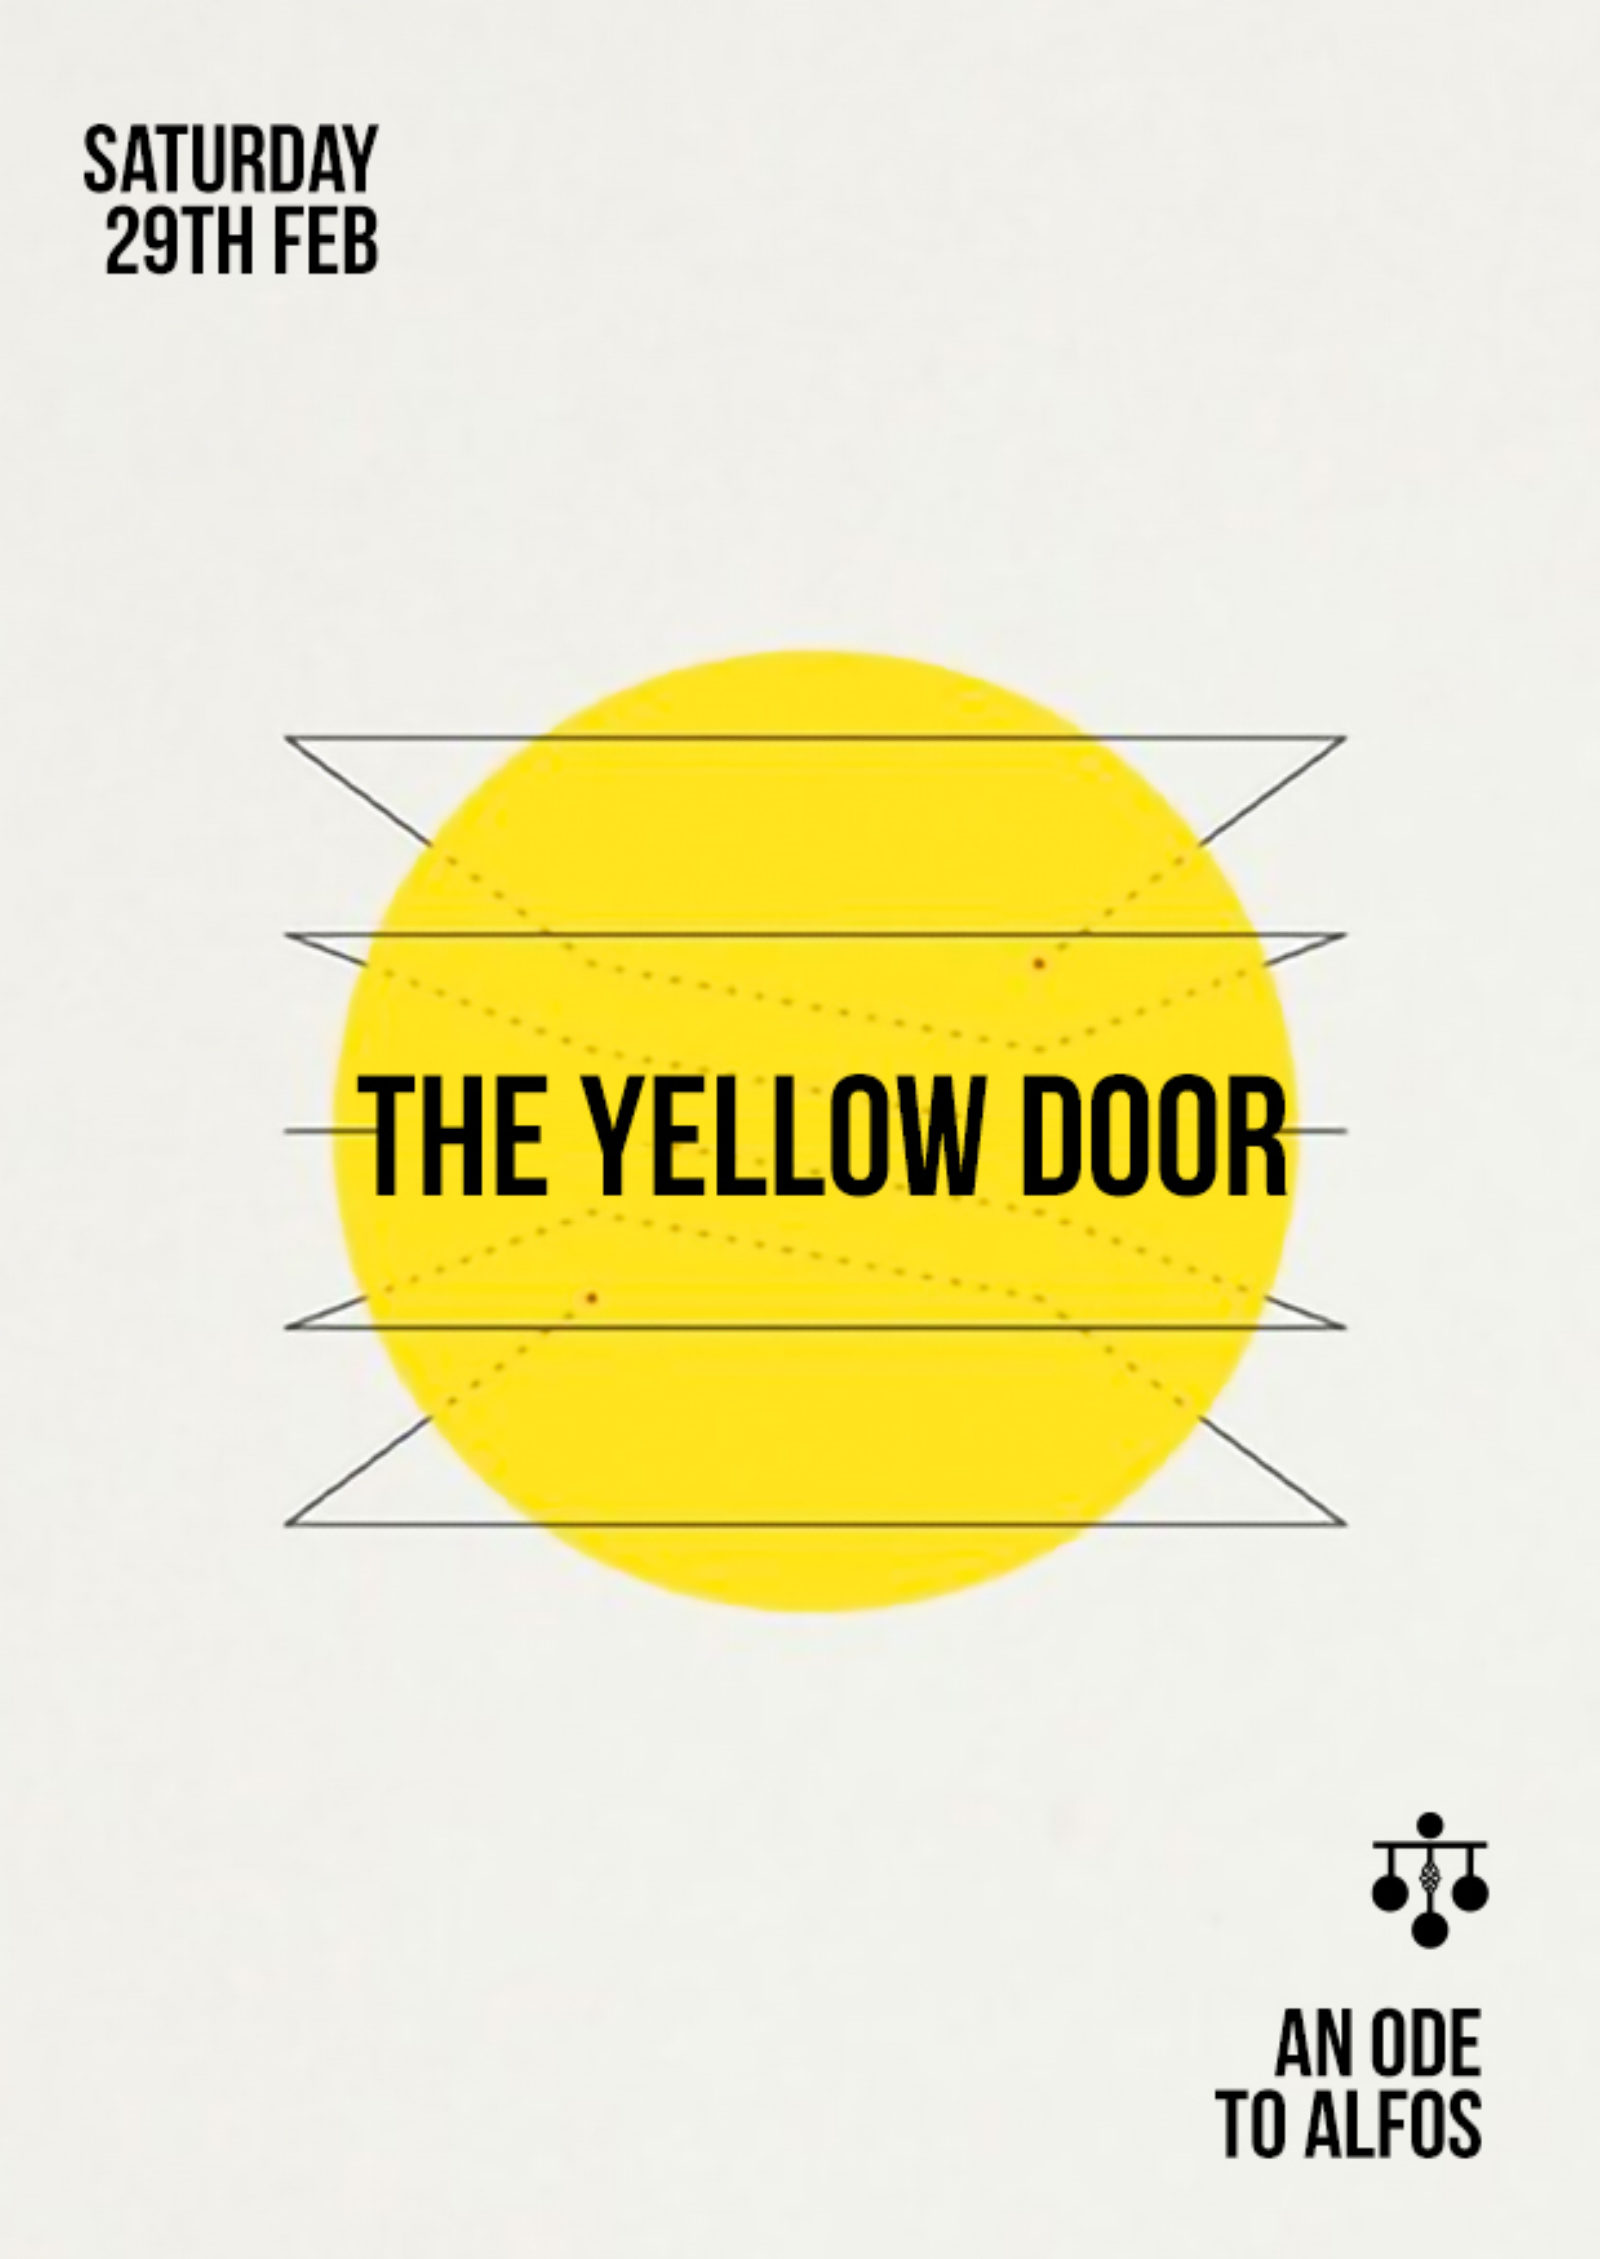 The Yellow Door - An Ode to ALFOS